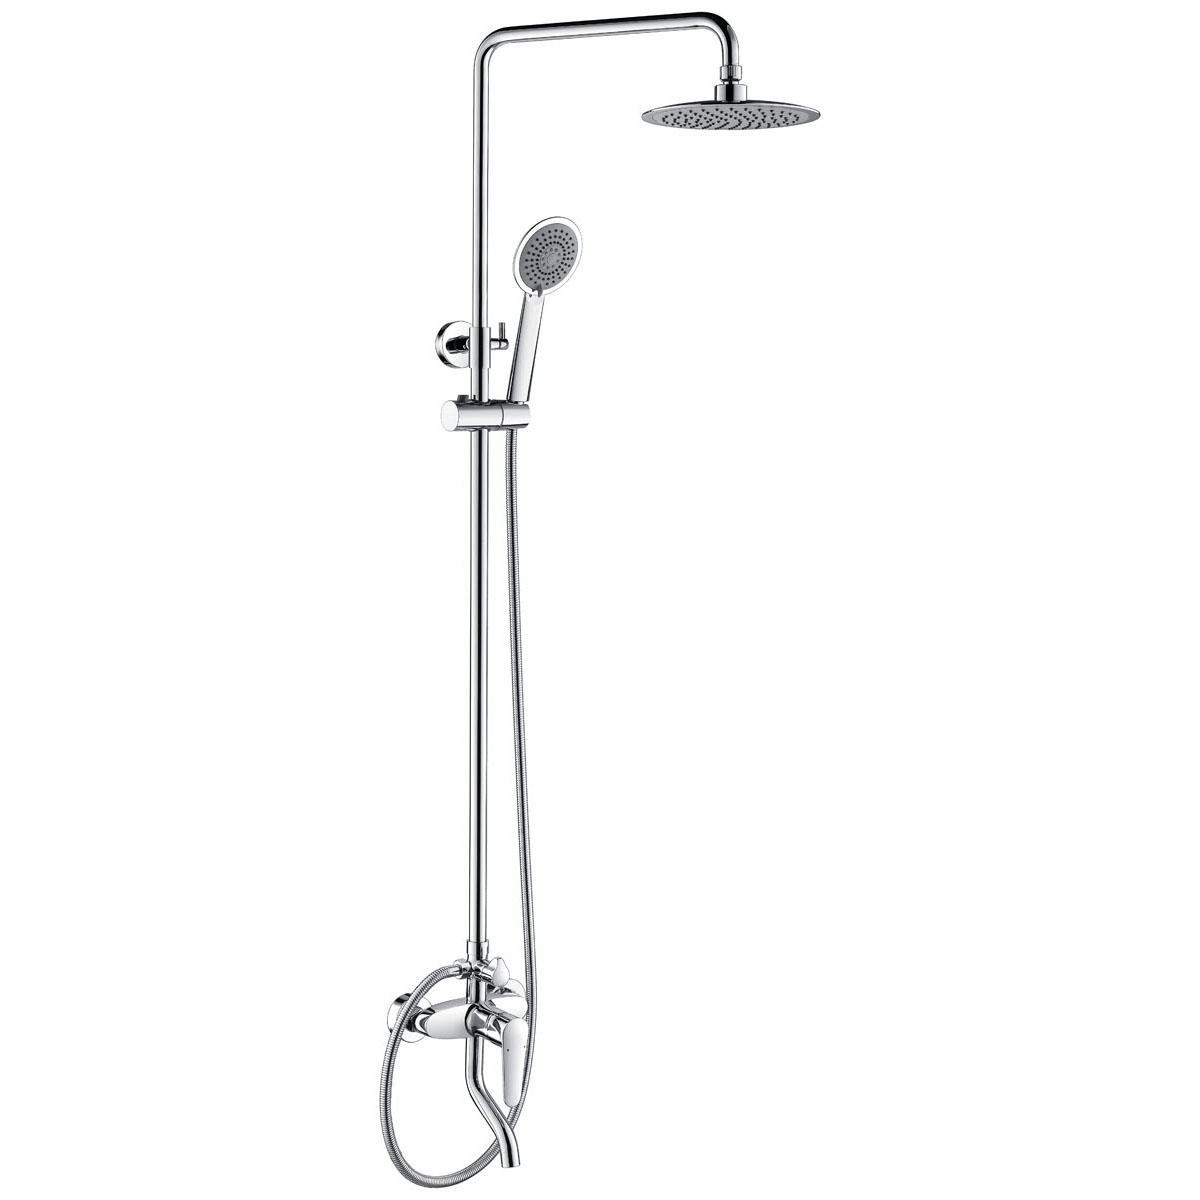 YS34262 Cột sen tắm, cột tắm mưa có vòi và vòi, có thể điều chỉnh độ cao;